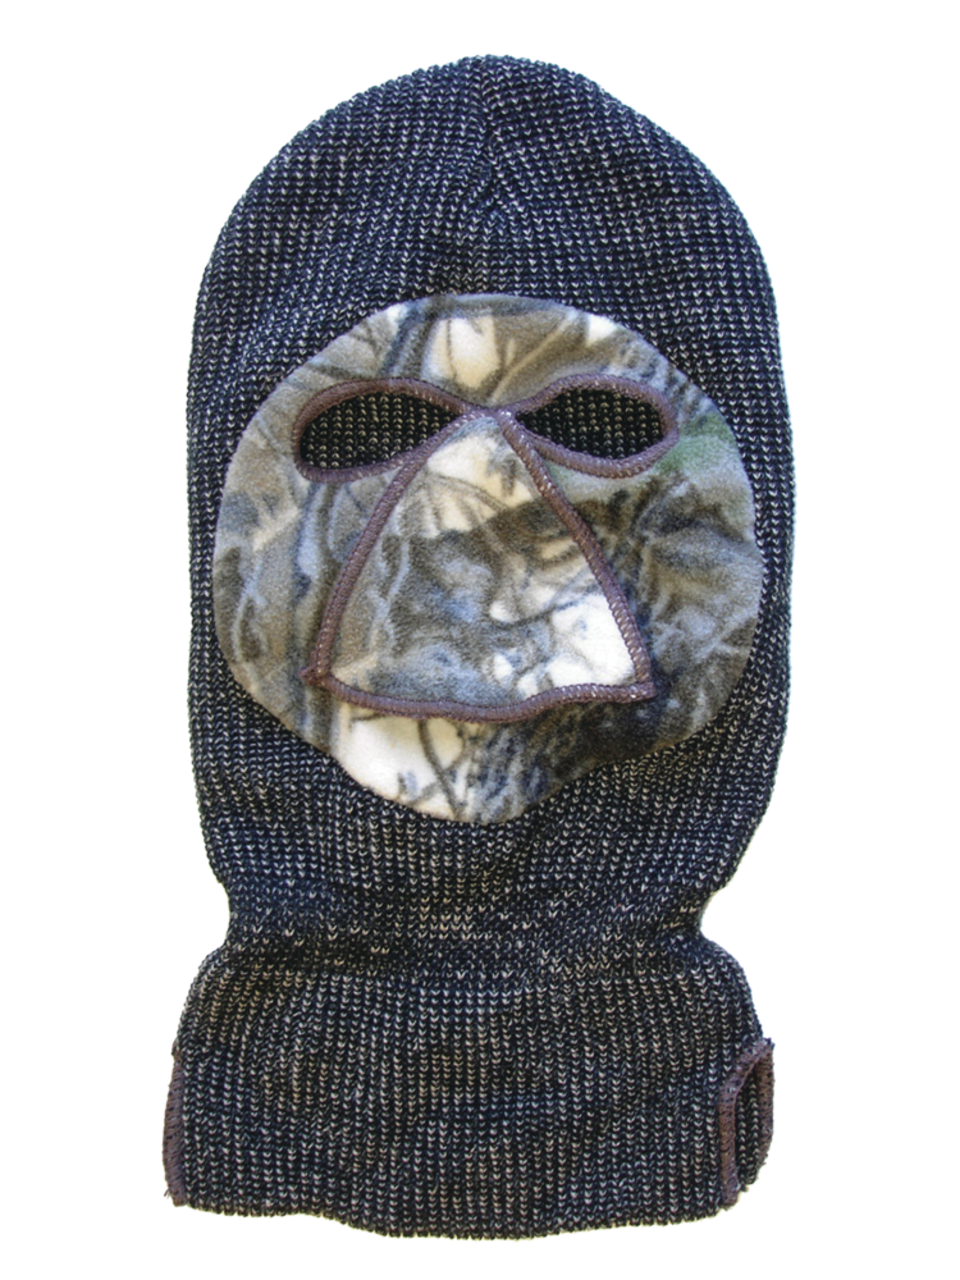 Chapeau cagoule chaud confortable avec masque facial pour la chasse, taille  unique, camouflage/gris